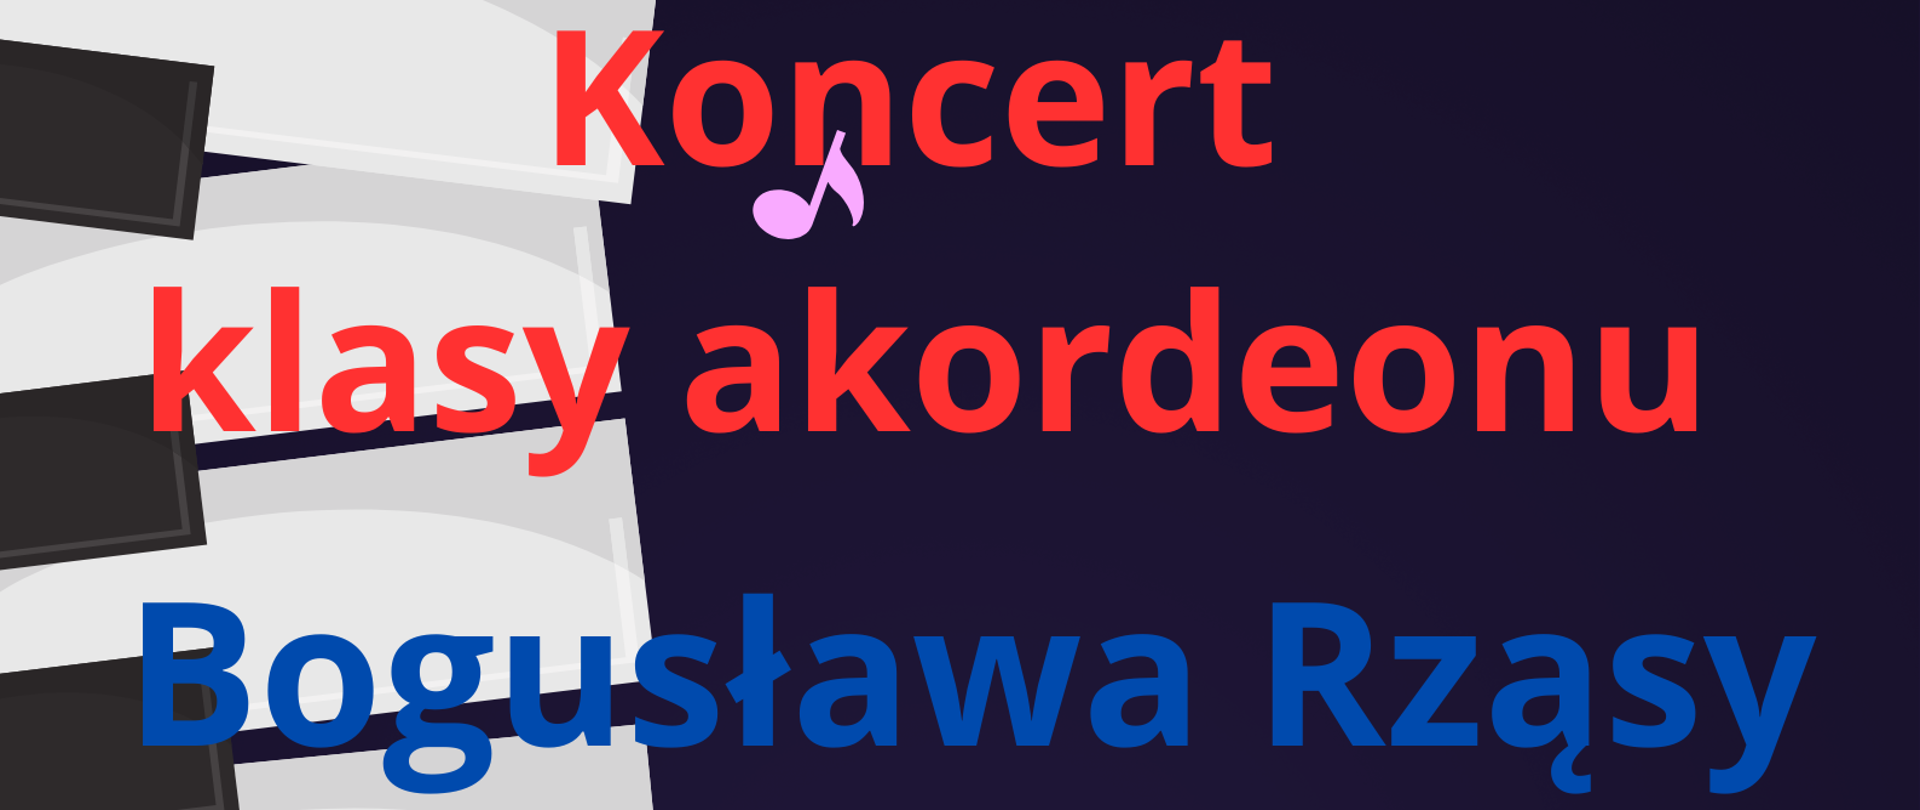 Grafika przedstawia klawiaturę akordeonu umieszczoną z lewej strony. Na całości kolorowymi literami informacje na temat koncertu klasy akordeonu Bogusława Rząsy. Grafika ozdobiona liliowymi nutami - ósemkami.